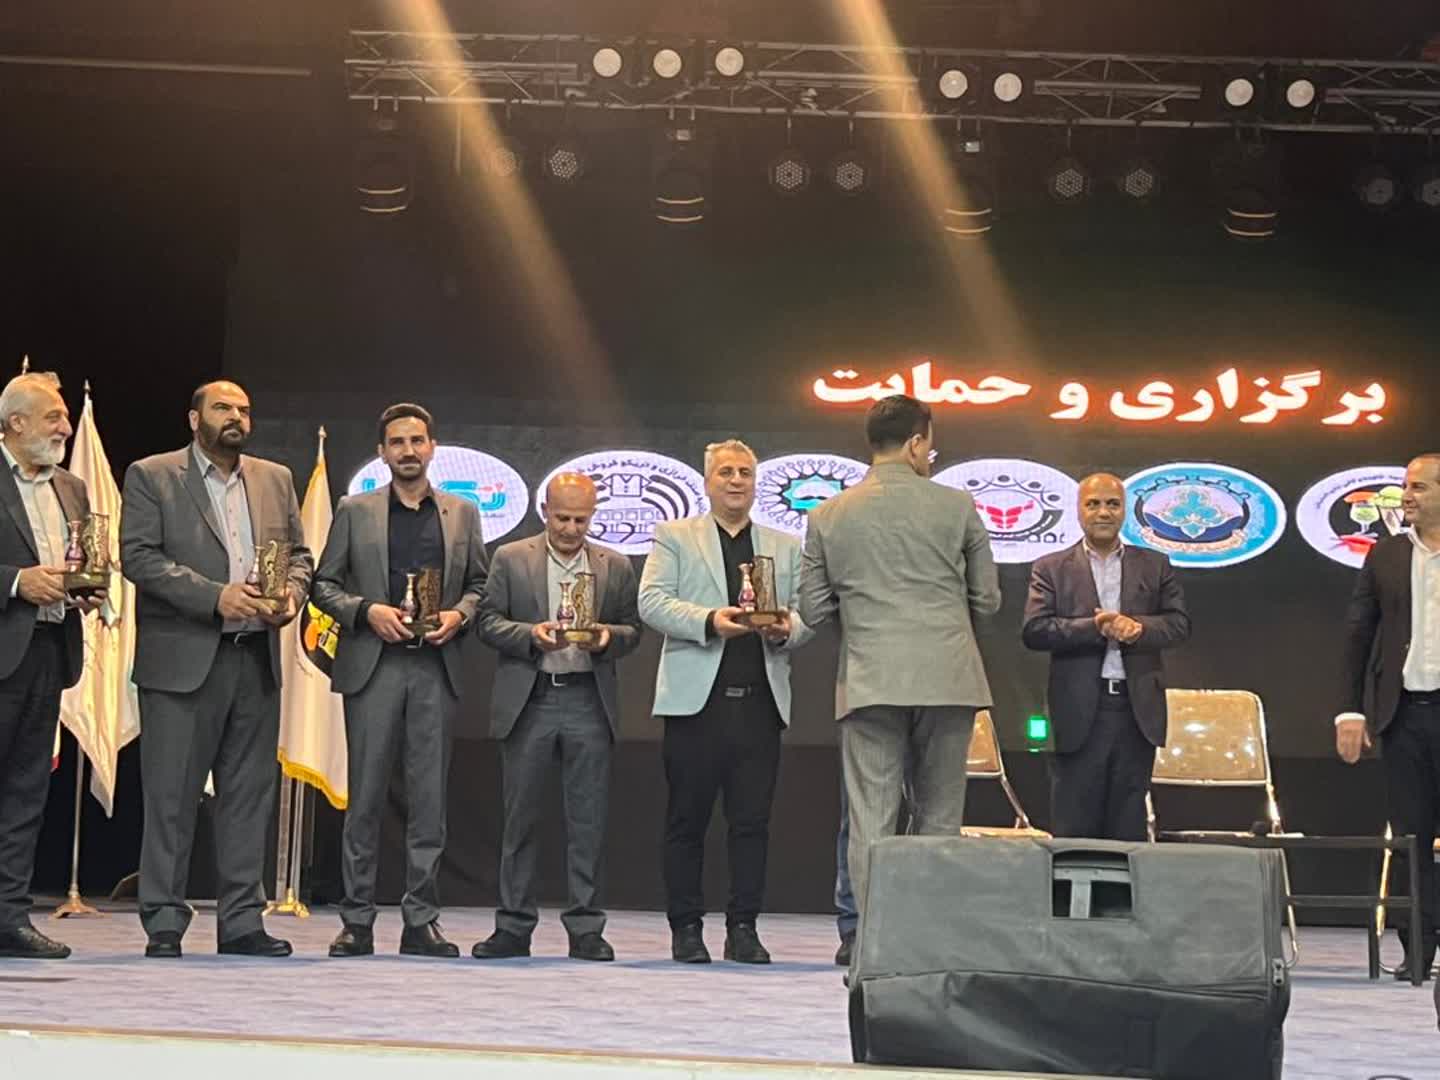 3 برگزاری همایش بزرگ مالیاتی اصناف اصفهان با حمایت 7 اتحادیه بزرگ اصفهانی